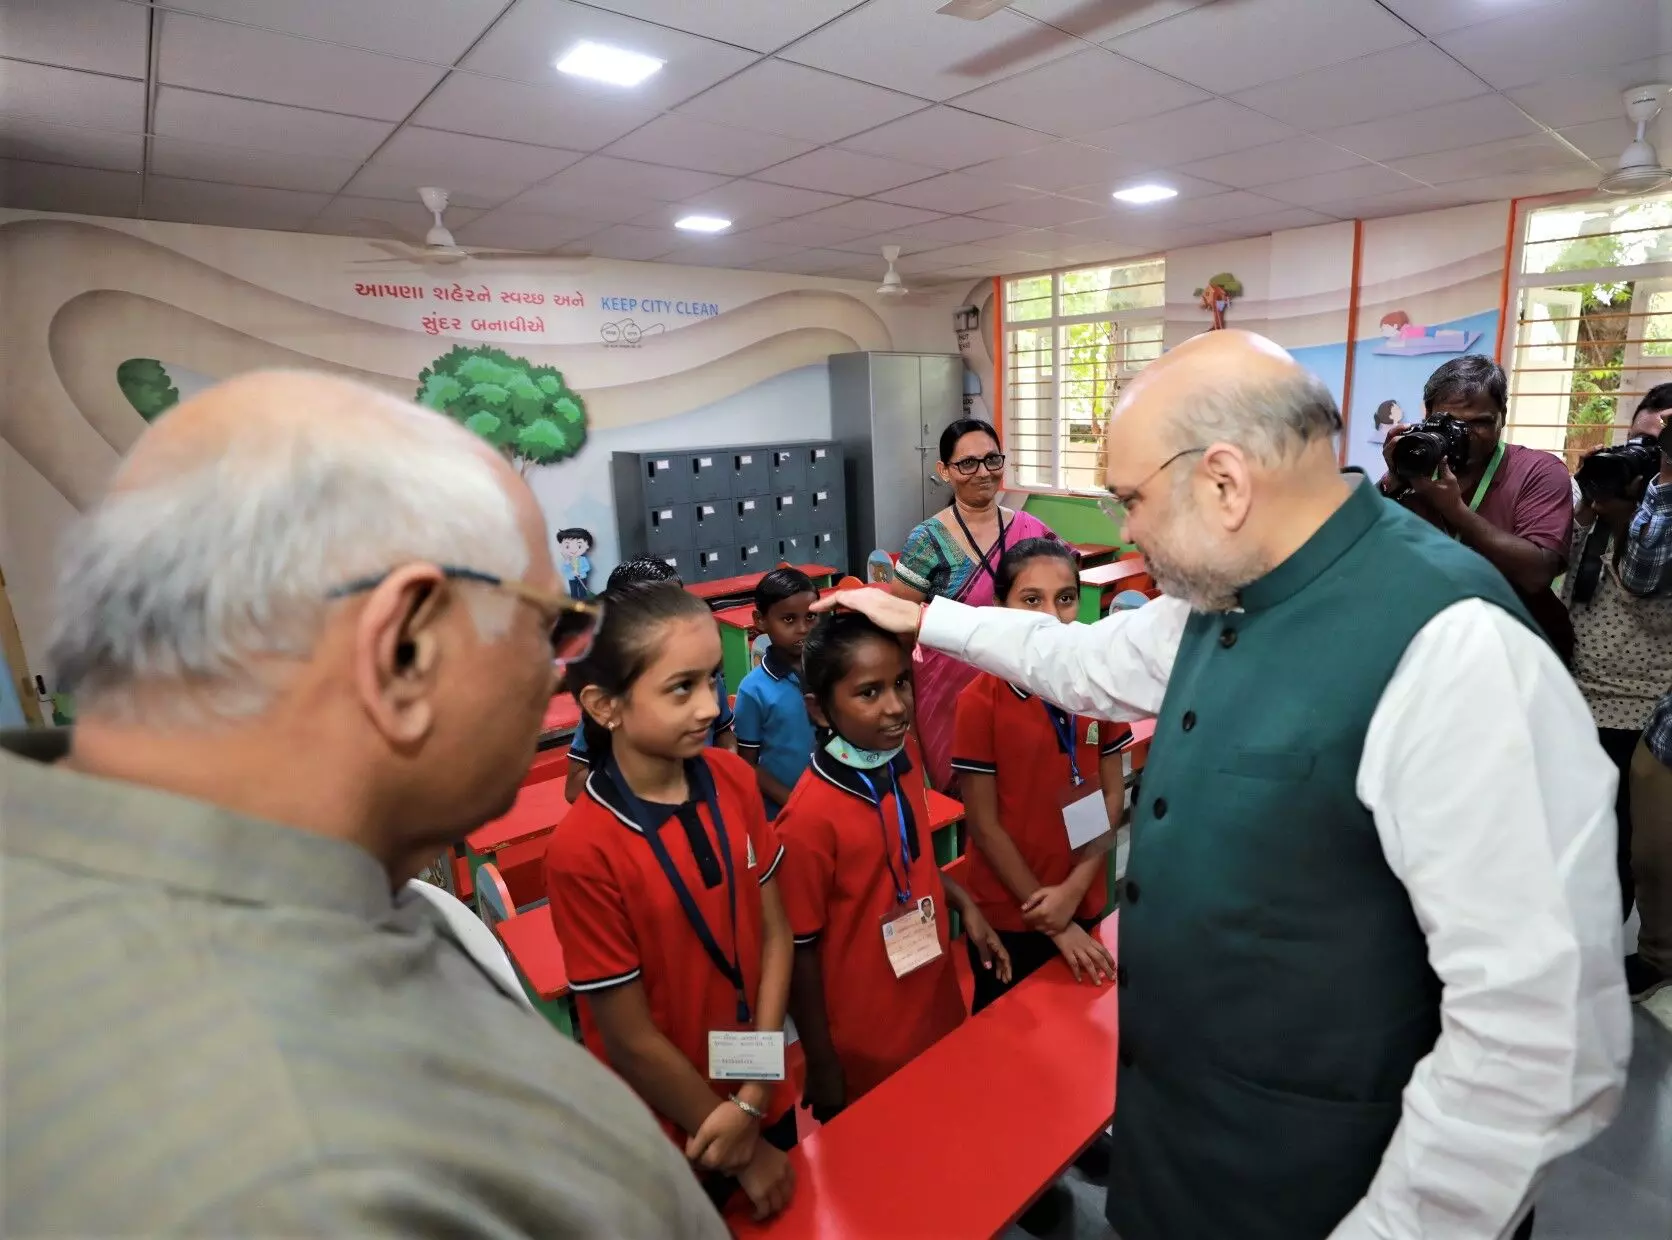 गृह मंत्री अमित शाह ने अहमदाबाद में 4 स्मार्ट स्कूल का किया उद्घाटन, कहा- पीएम मोदी ने बच्चों को उज्ज्वल भविष्य देने के अपने संकल्प को जमीन पर चरितार्थ किया है।